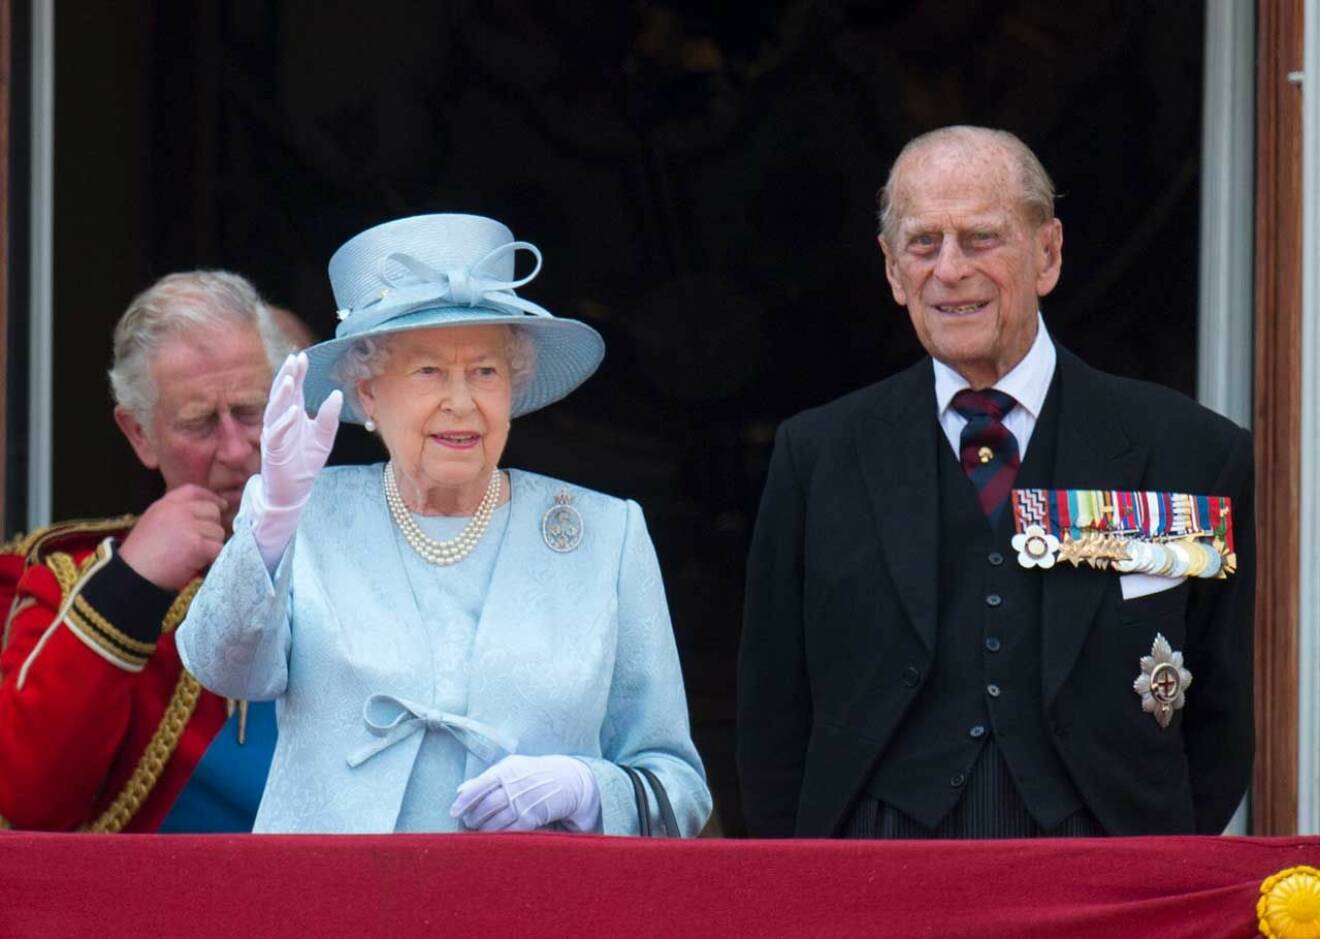 Drottning Elizabeth har endast missat ett Trooping the Colour, här syns hon tillsammans med sin make prins Philip. 